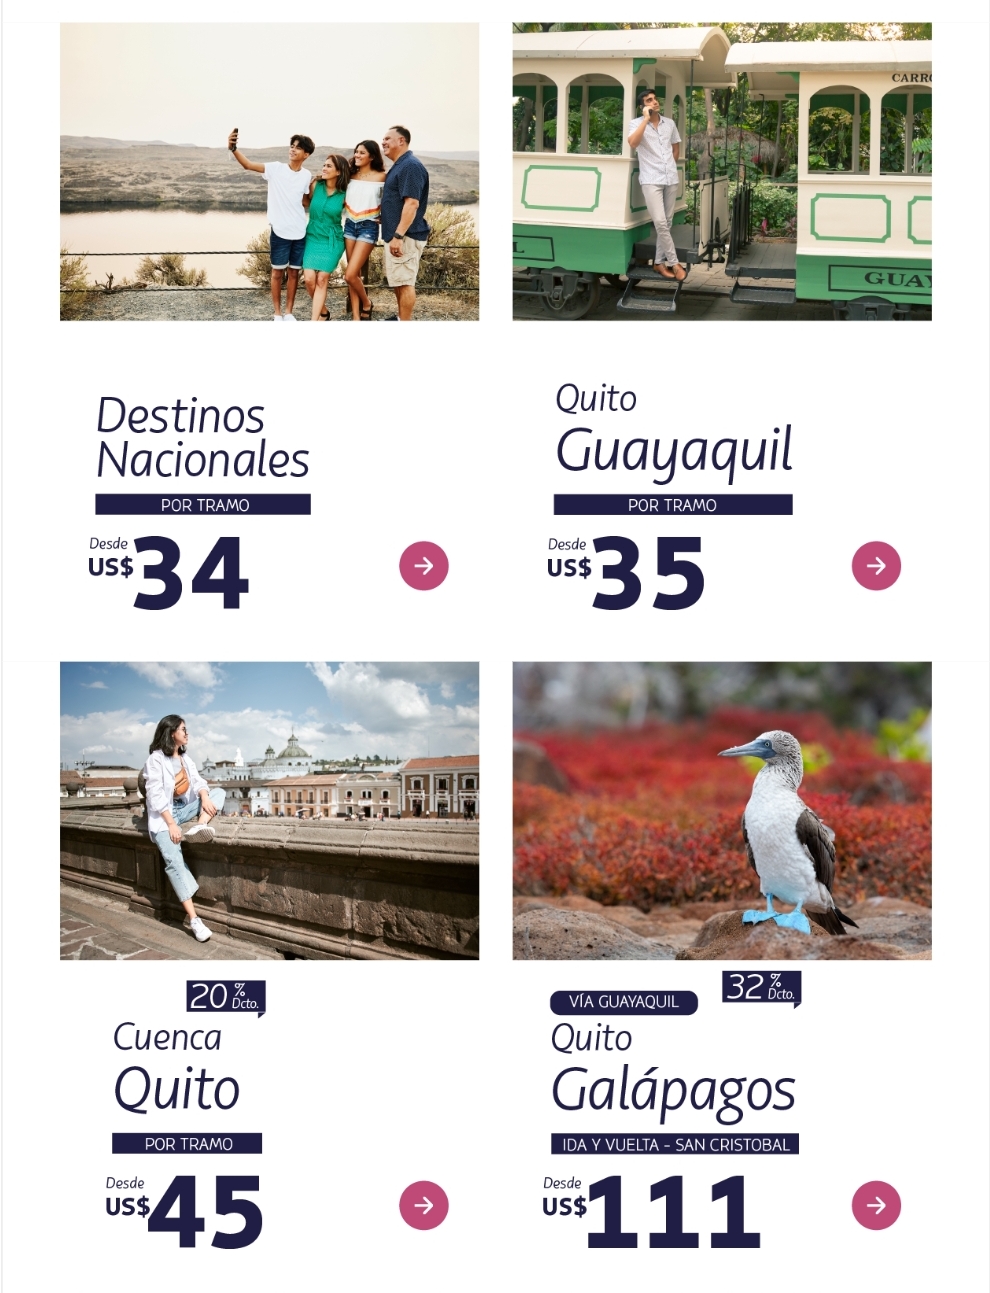 Vuelos a Galápagos desde Guayaquil y Quito - Ecuador - Foro América del Sur